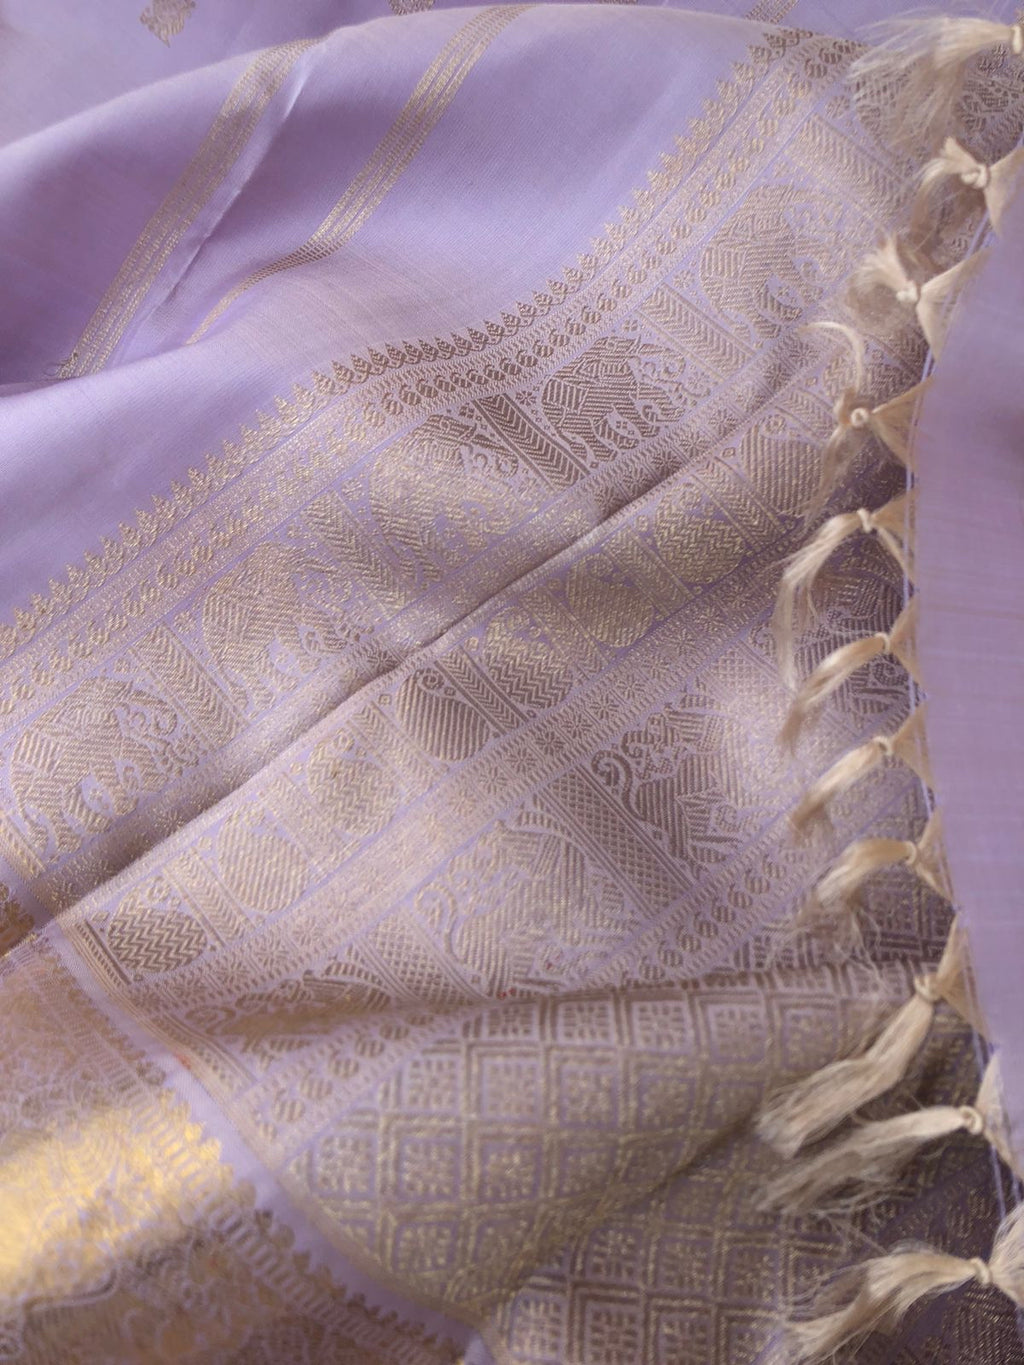 Aarabhi - Amazing Pastel Kanchivarams - beige mixed ice blue lavender to give a unusual mild tone